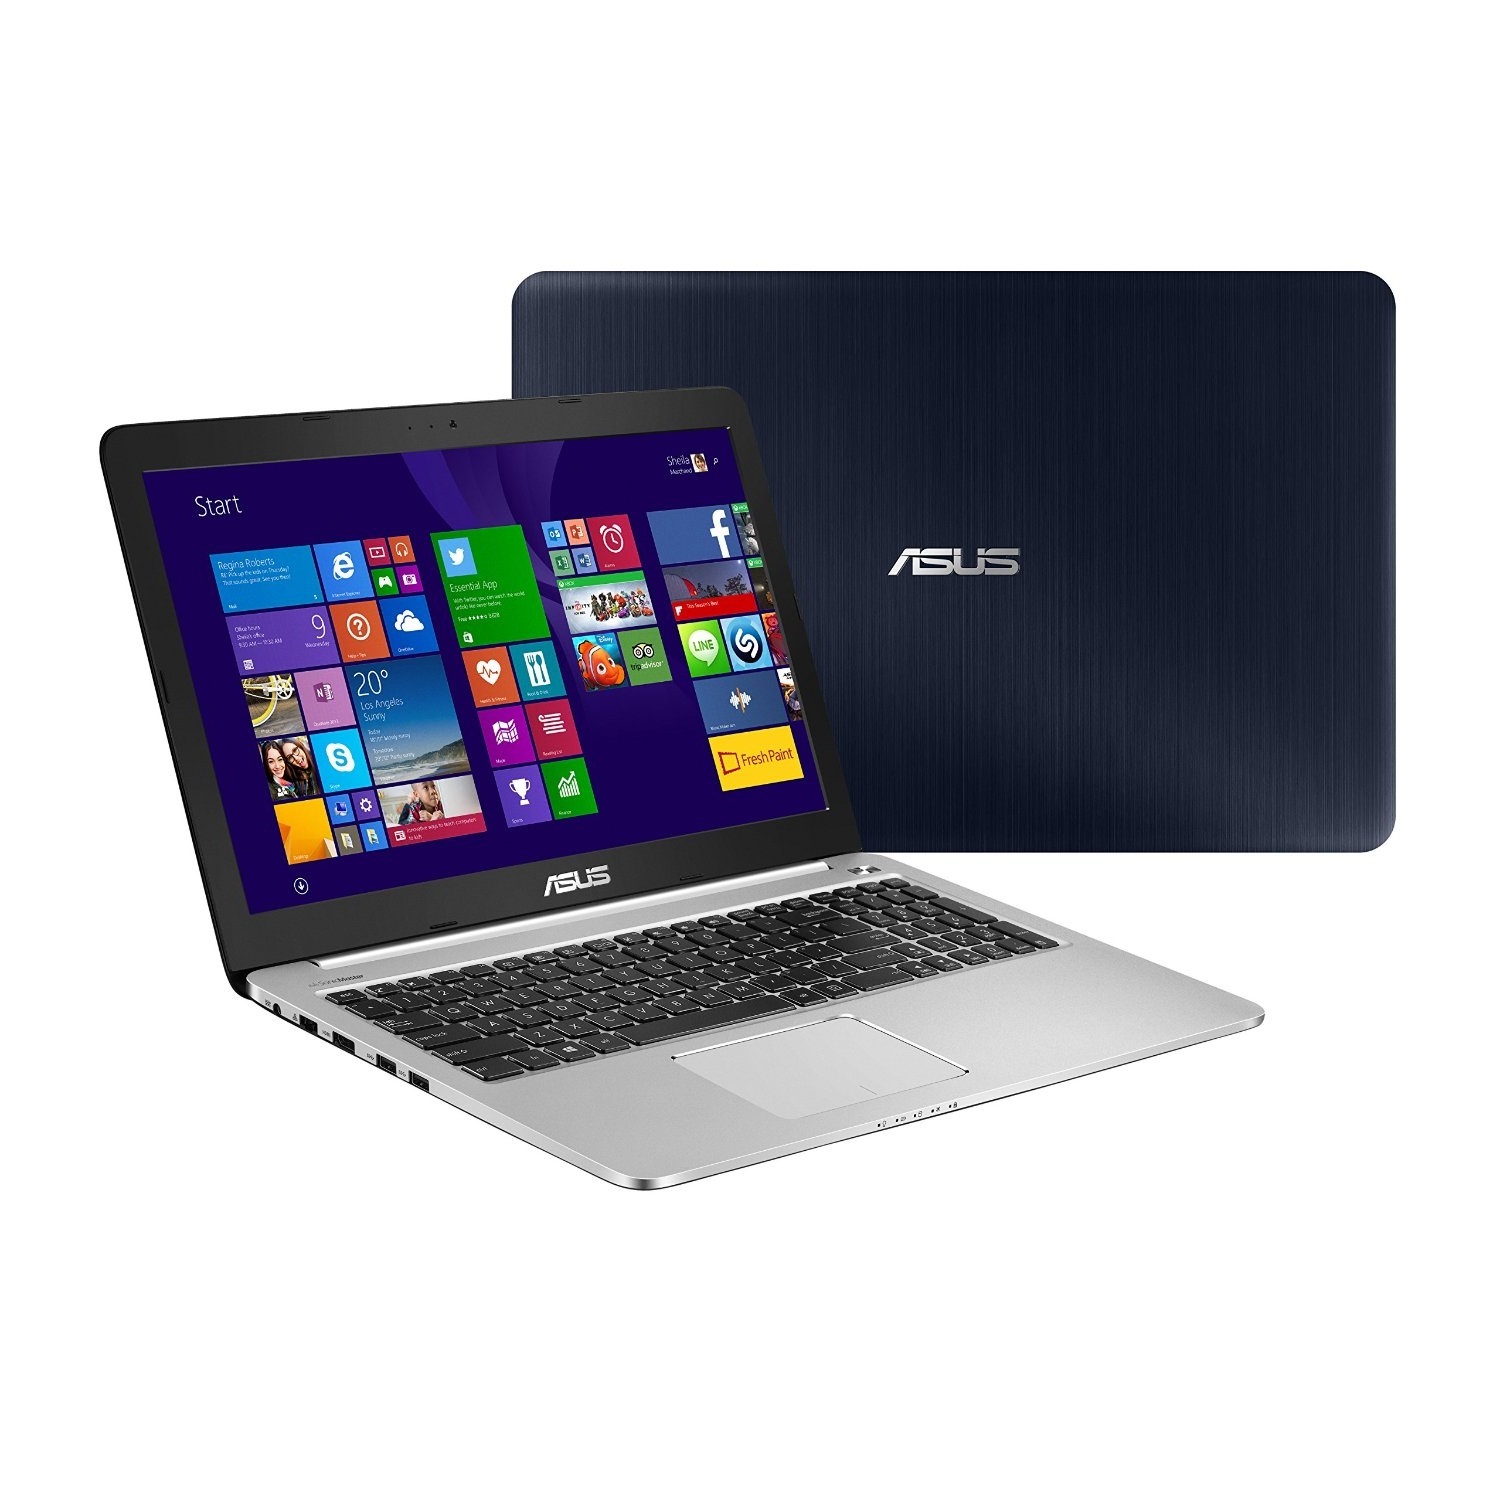 Laptop Asus K501LX-DM050D - Core i5 5200U, 4Gb, HDD 500GB, NVIDIA® GeForce® GTX 950M, 15.6Inch